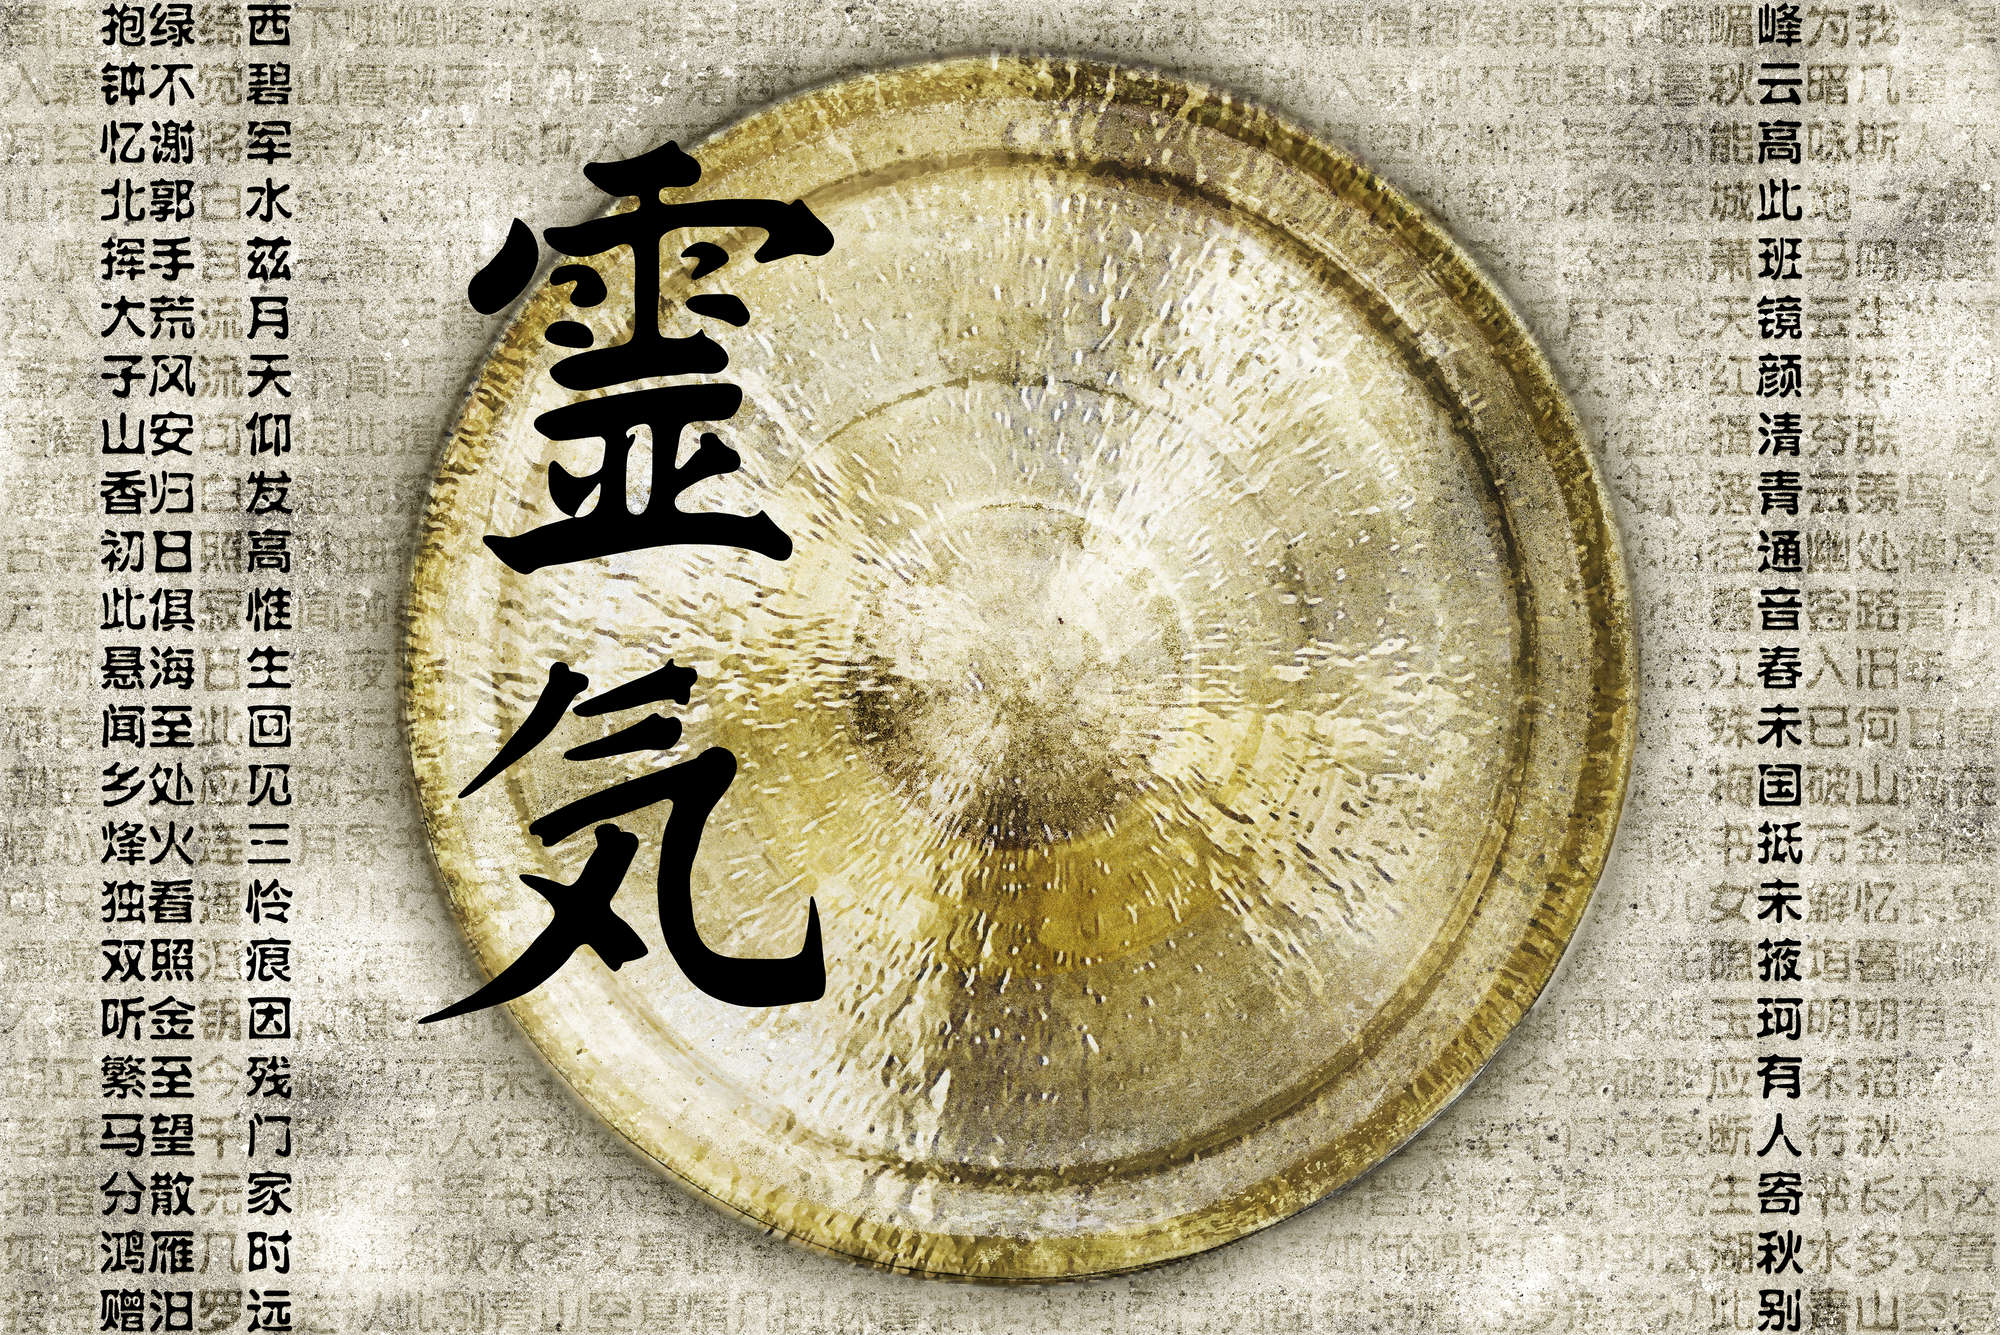             Fototapete Asiatischer Gong – Strukturiertes Vlies
        